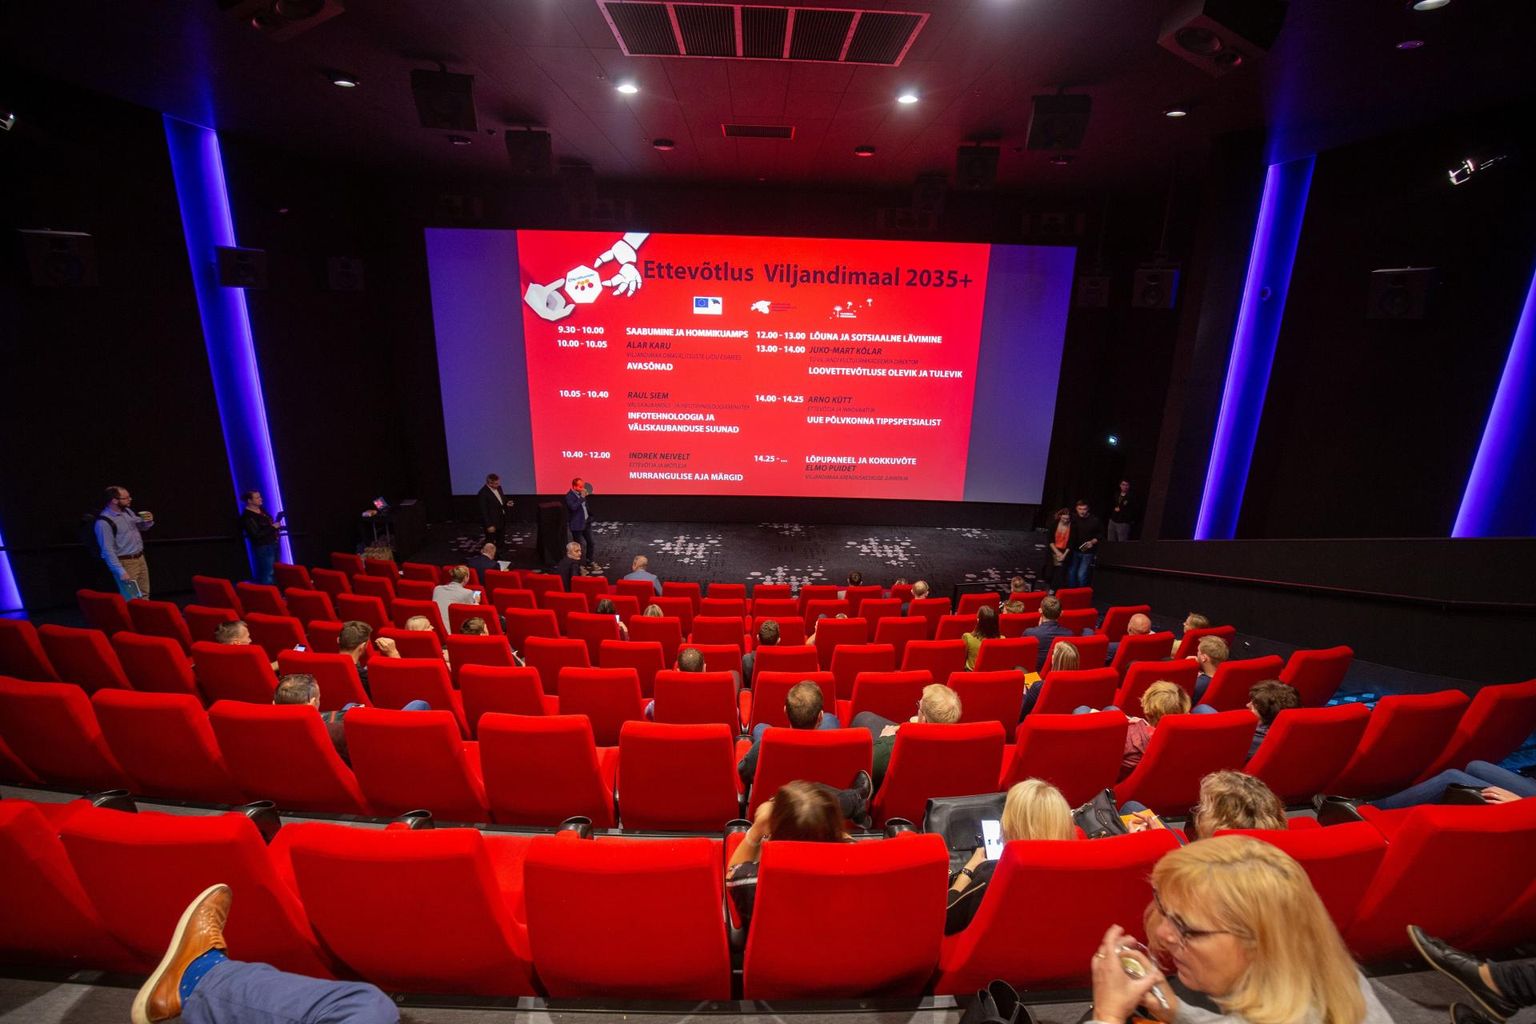 Nagu mullu peetakse ettevõtlusnädala konverentsi Viljandis kino ruumides. Tänavu keskendutakse teemadele, mis kogunevad pealkirja alla «Mikroettevõtlus – ratsa rikkaks või otse hullumajja?».